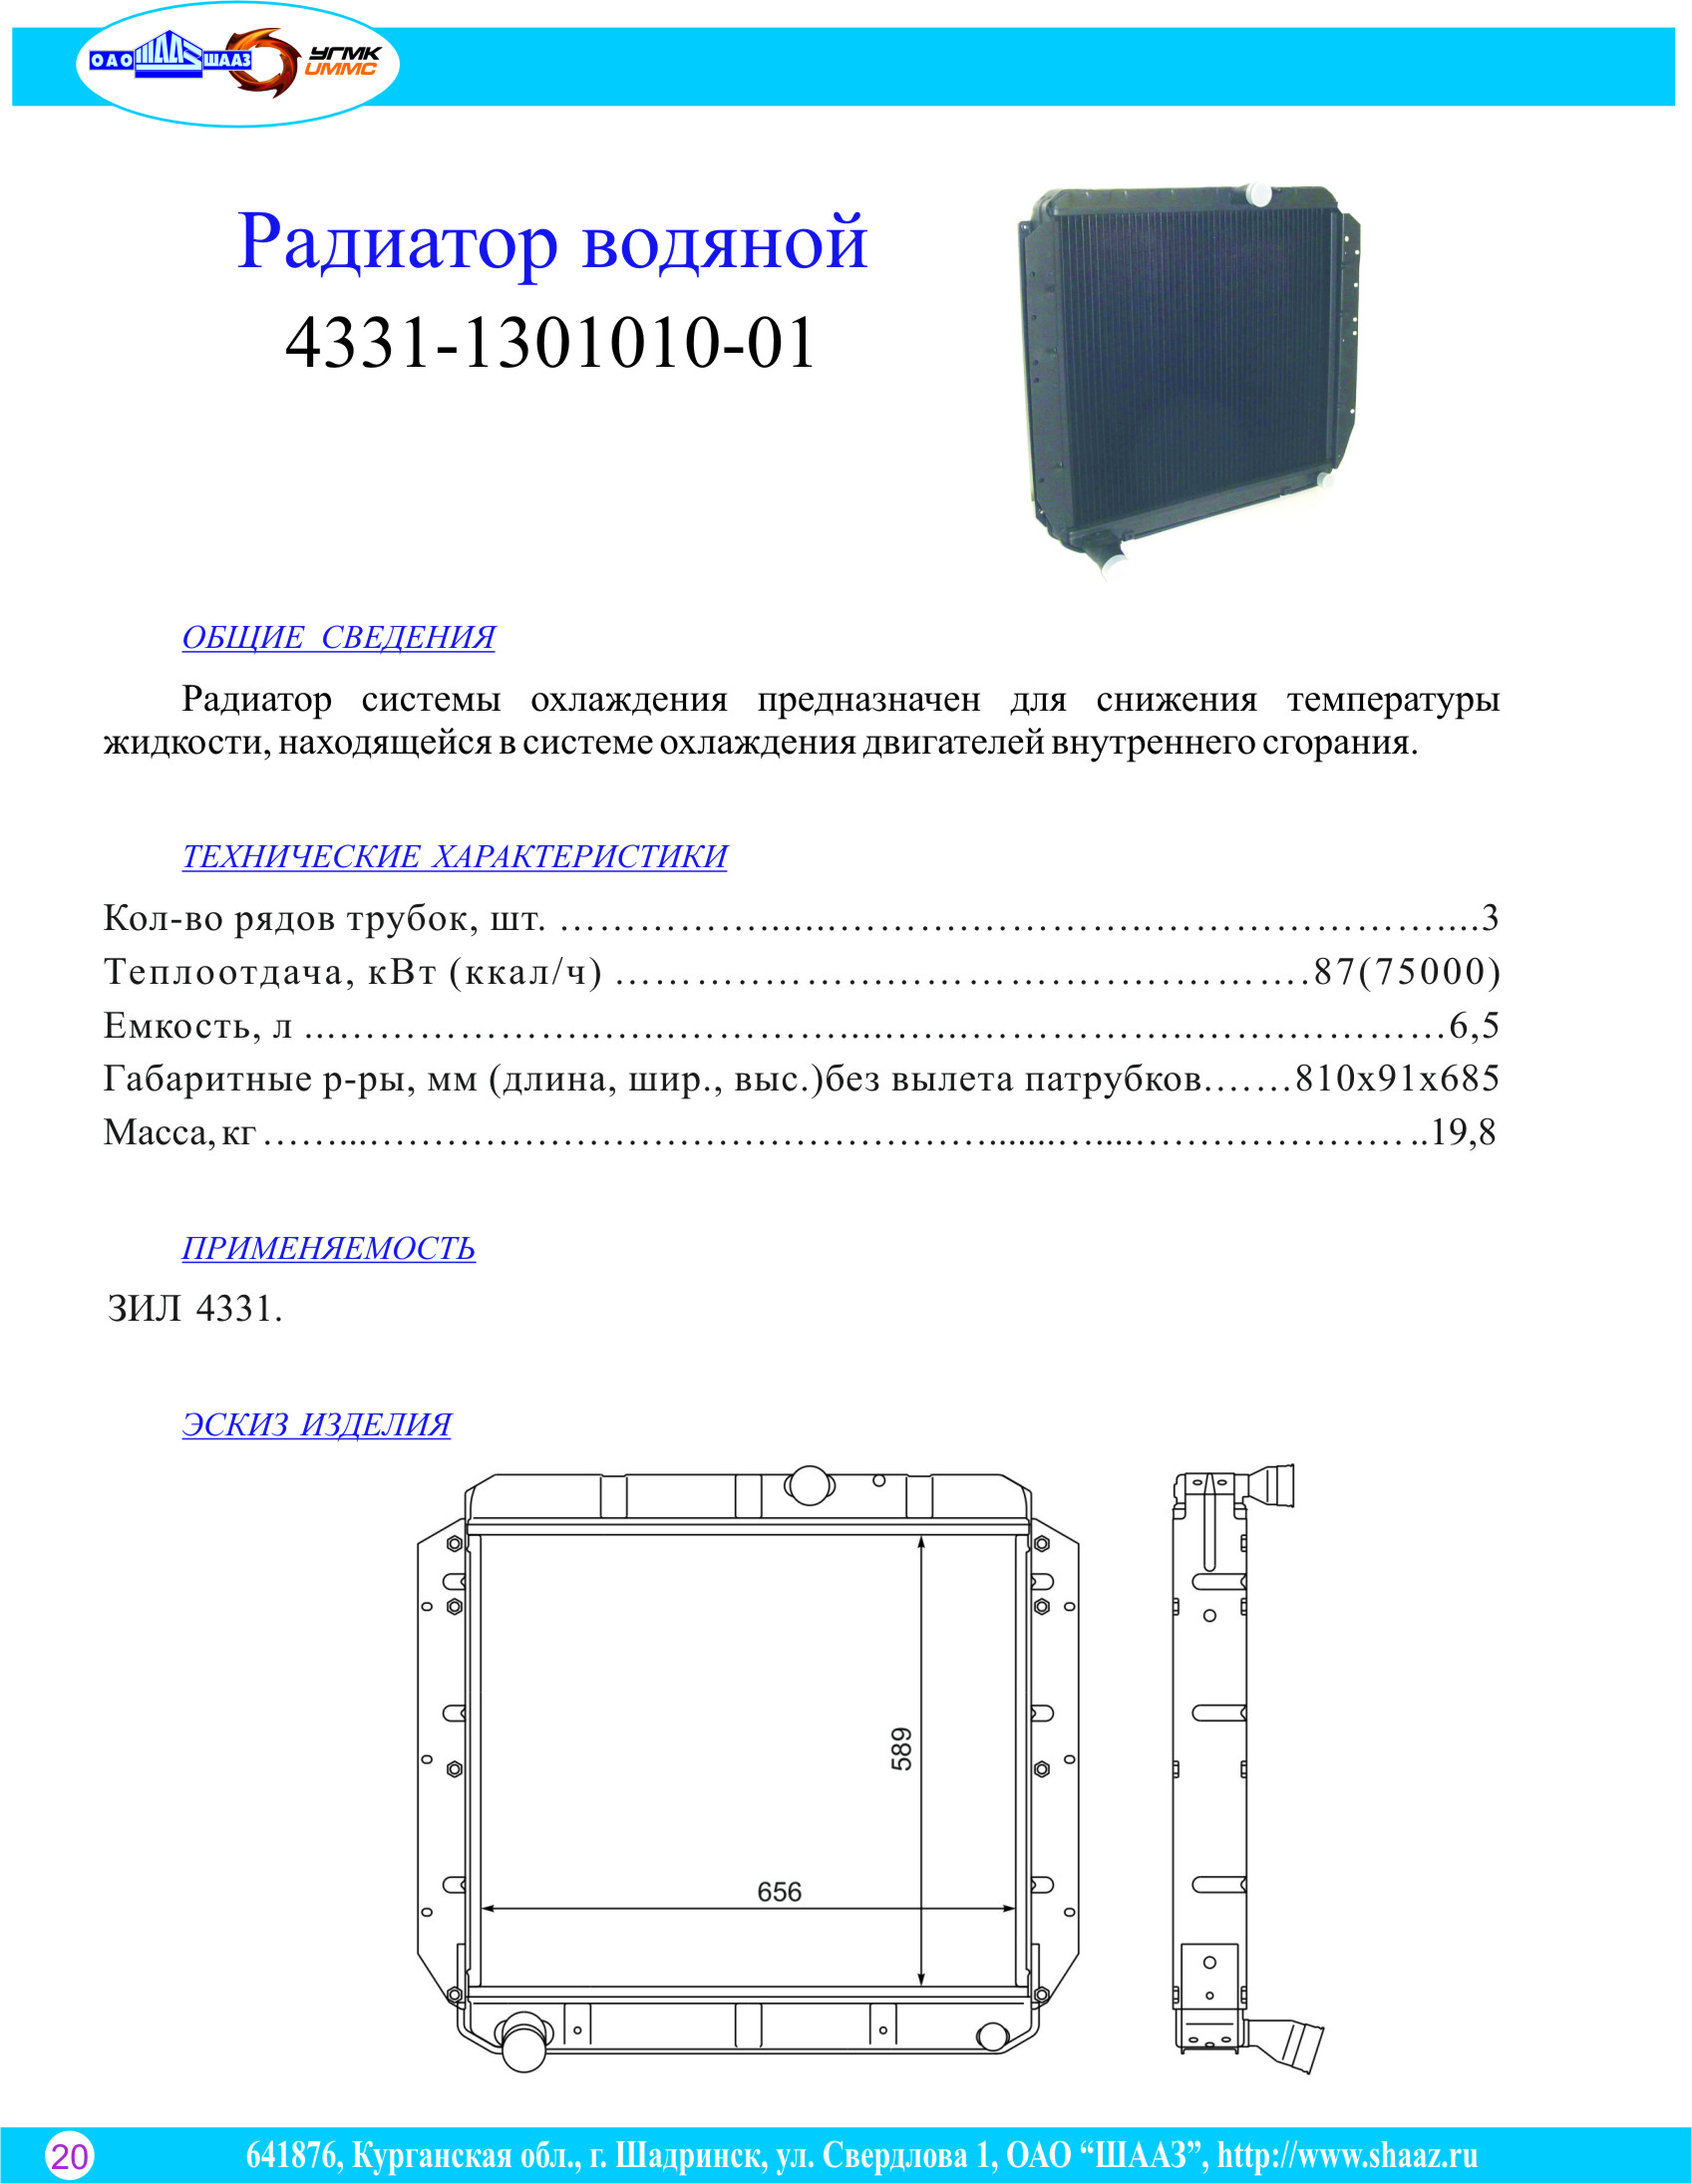 Радиатор водяной ЗИЛ 4331 и модиф. 4331-1301010